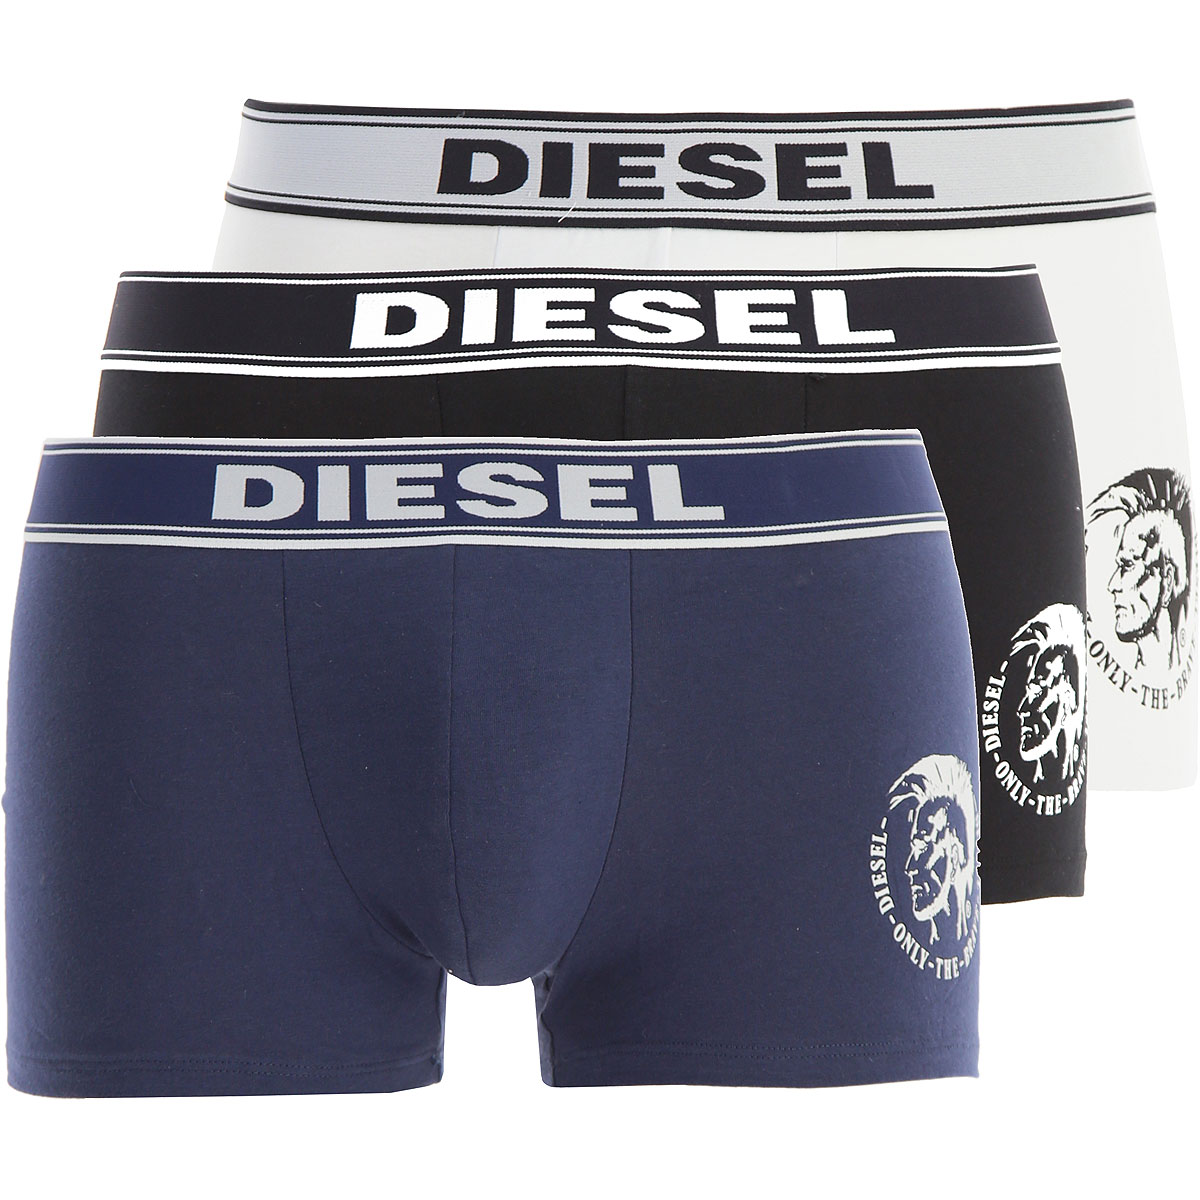 Diesel Boxer Shorts für Herren, Unterhose, Short, Boxer Günstig im Sale, 3 Pack, Dunkelblau, Baumwolle, 2017, L L XS